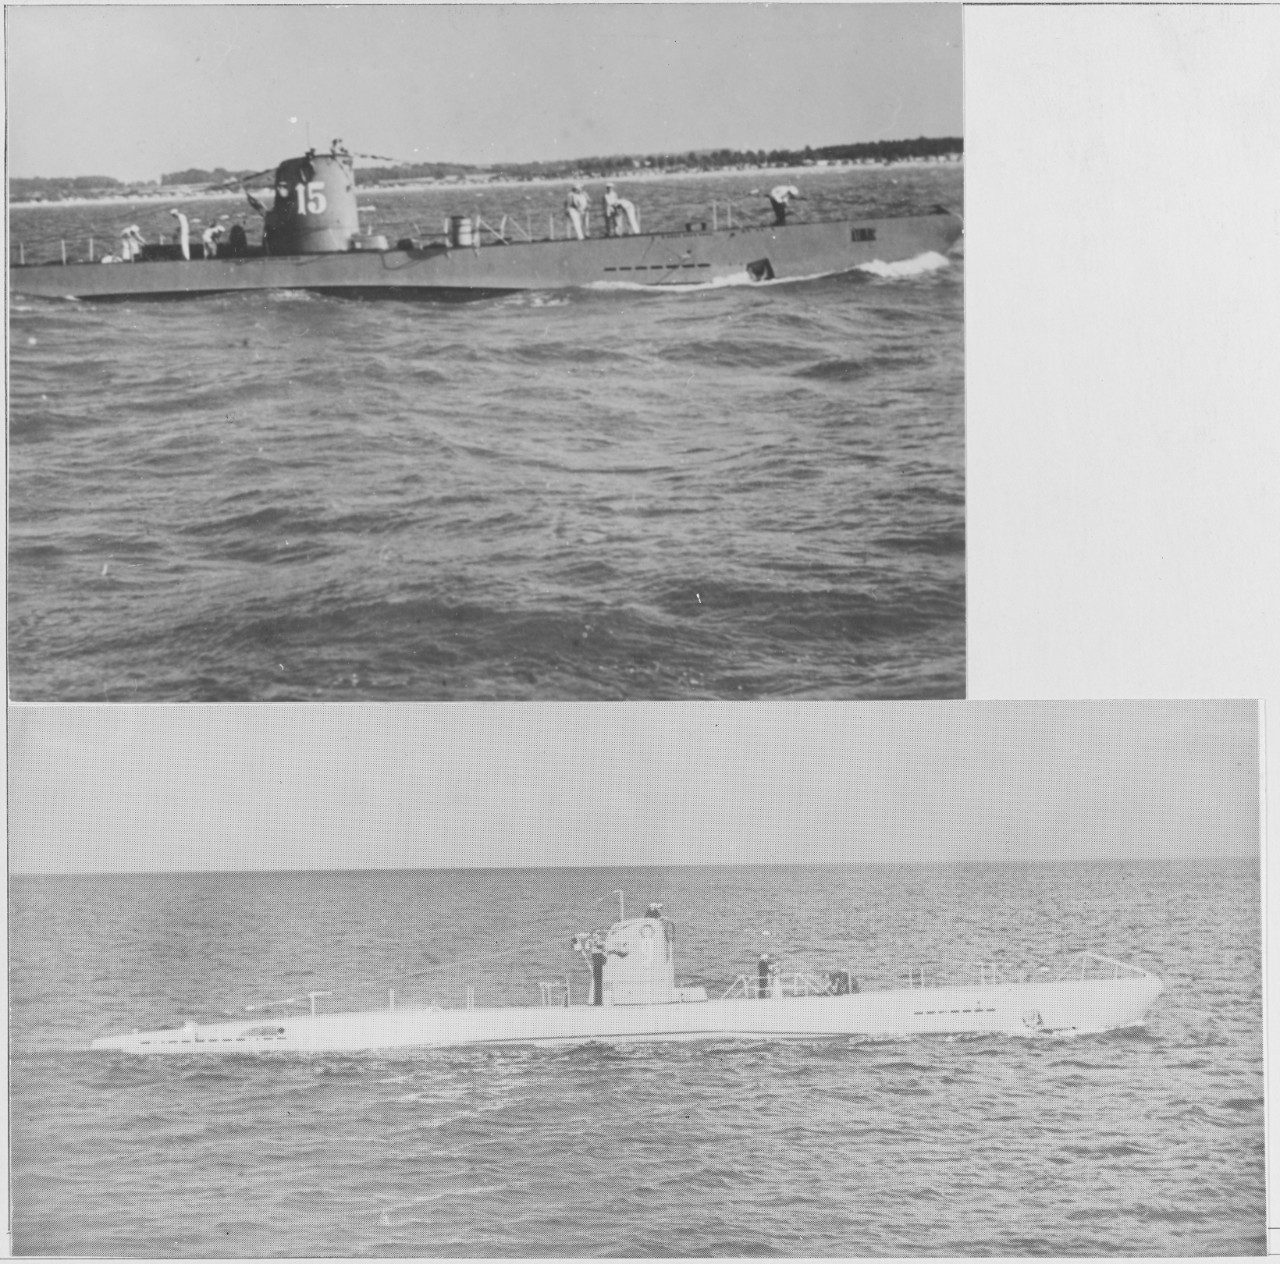 Germany-SS (U-1 class)